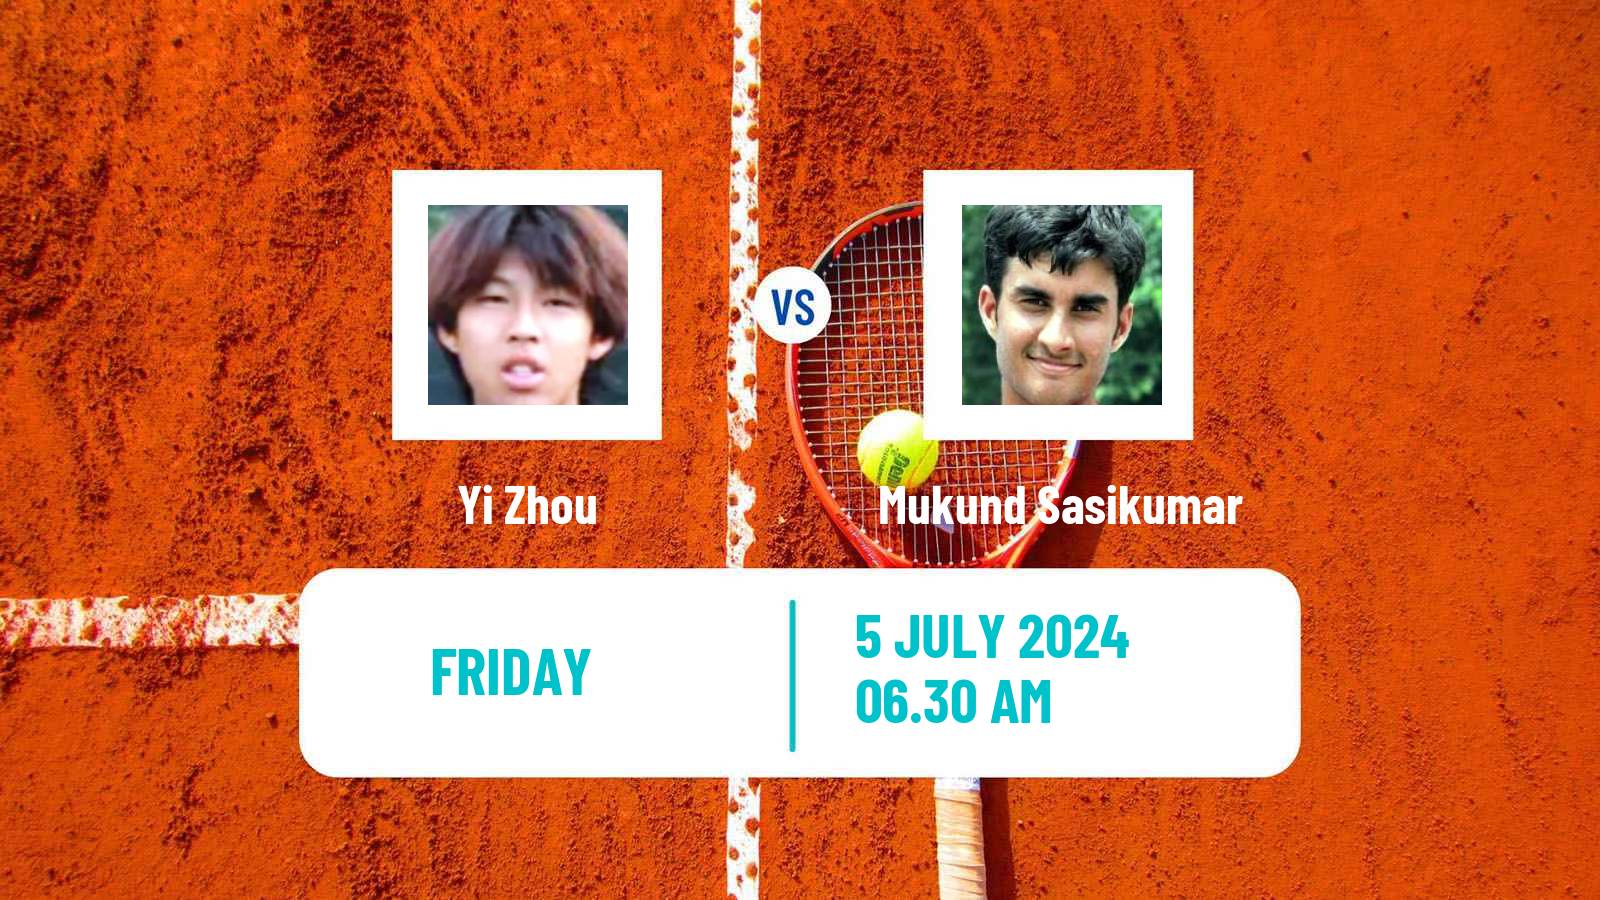 Tennis ITF M15 Tianjin 2 Men Yi Zhou - Mukund Sasikumar